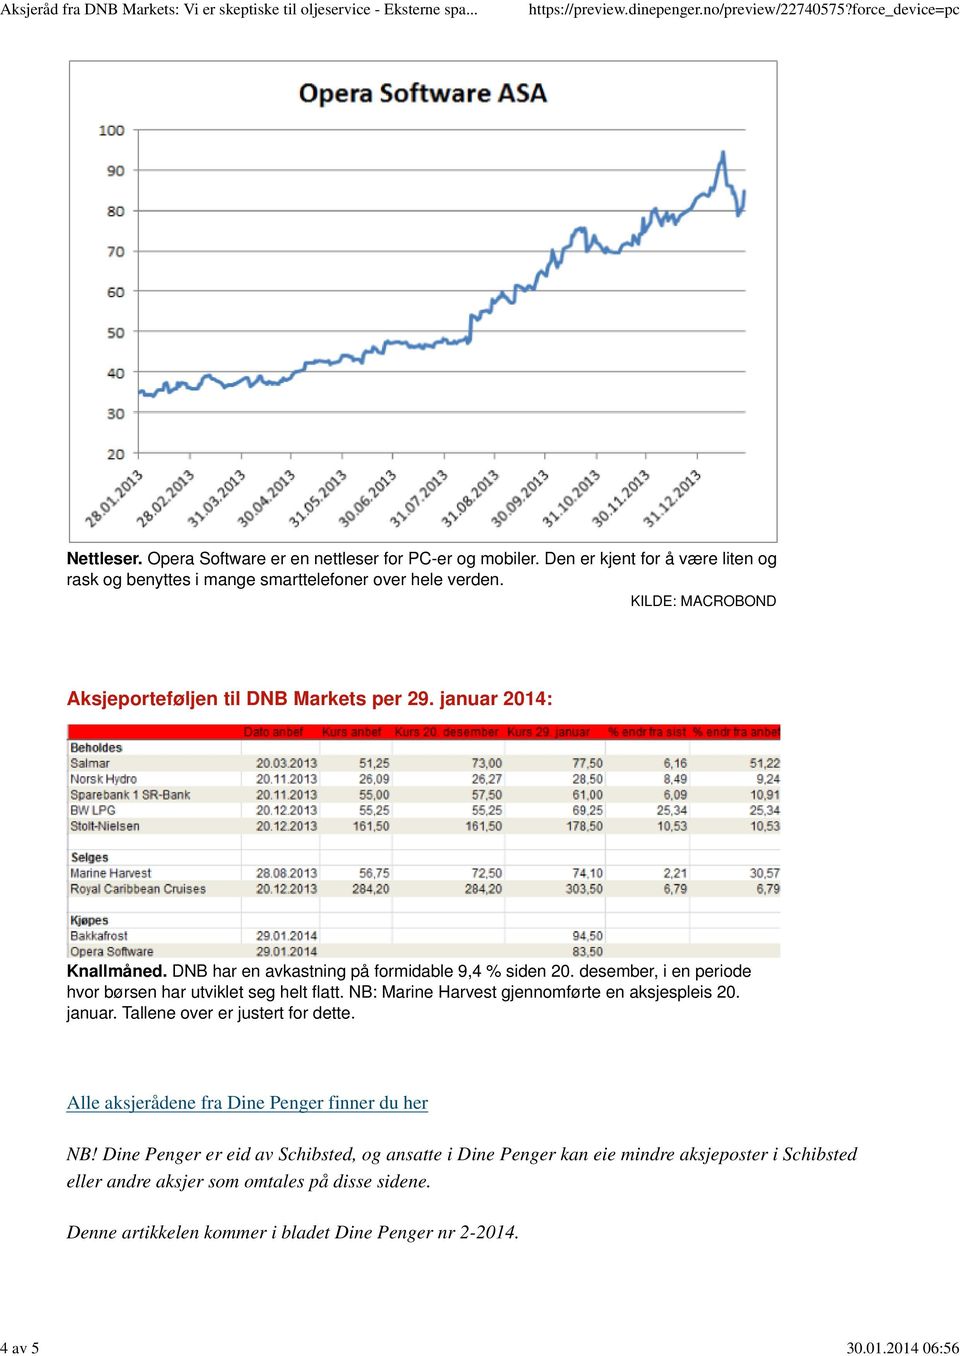 KILDE: MACROBOND Aksjeporteføljen til DNB Markets per 29. januar 2014: Knallmåned. DNB har en avkastning på formidable 9,4 % siden 20. desember, i en periode hvor børsen har utviklet seg helt flatt.